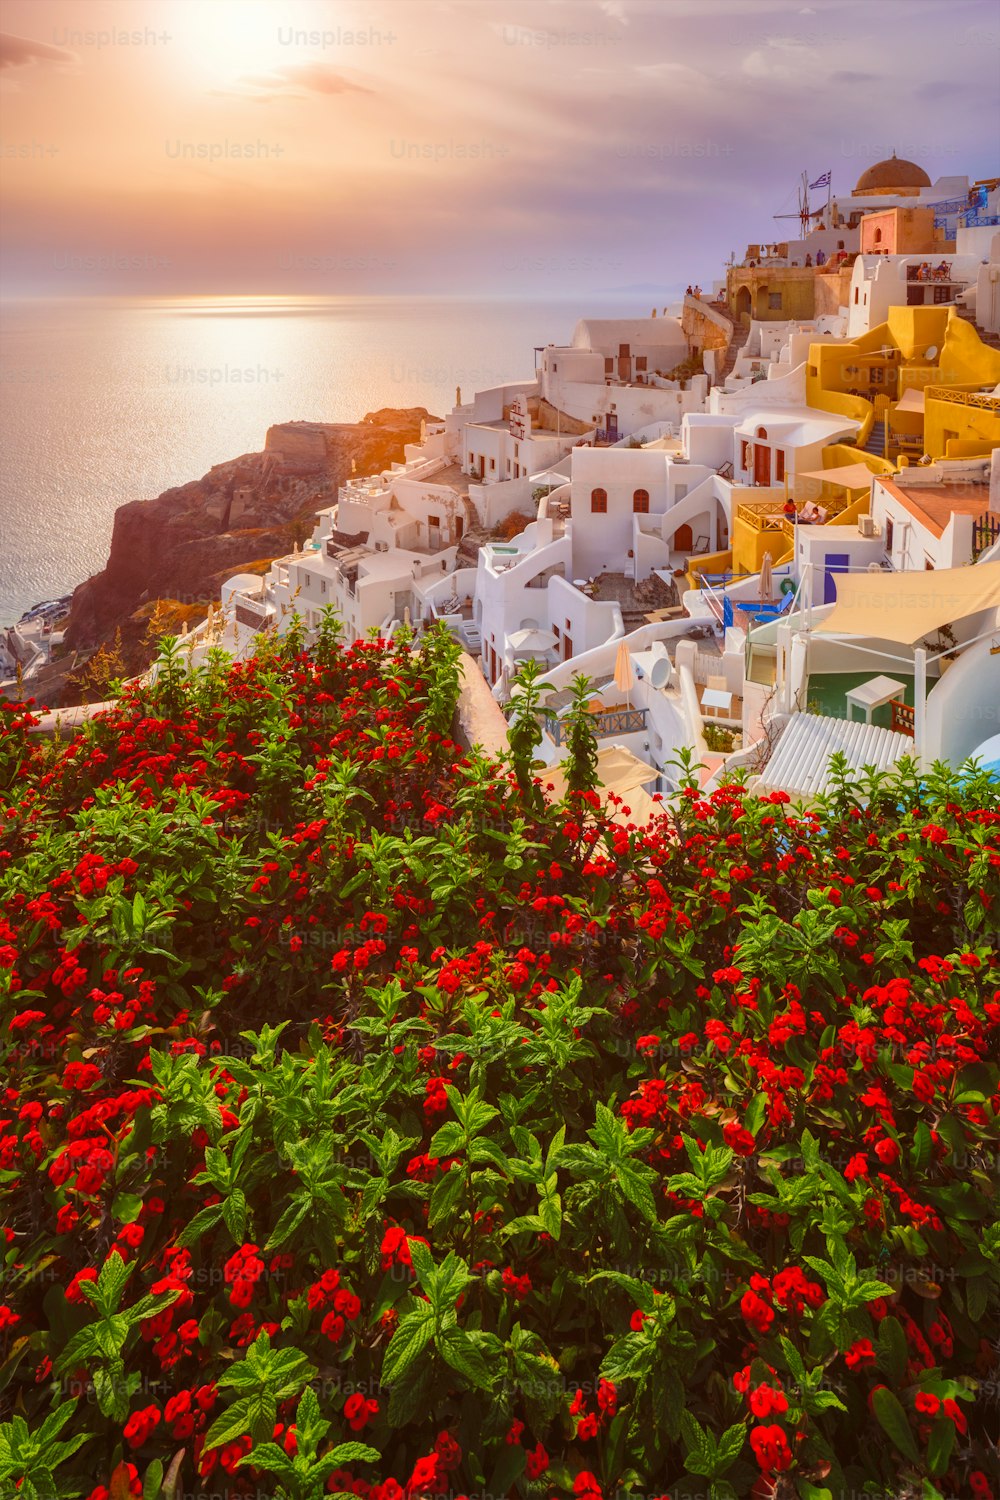 海に沈む風光明媚な夕日と、夏のサントリーニ島の絵のように美しいイアの町、前景に赤い花